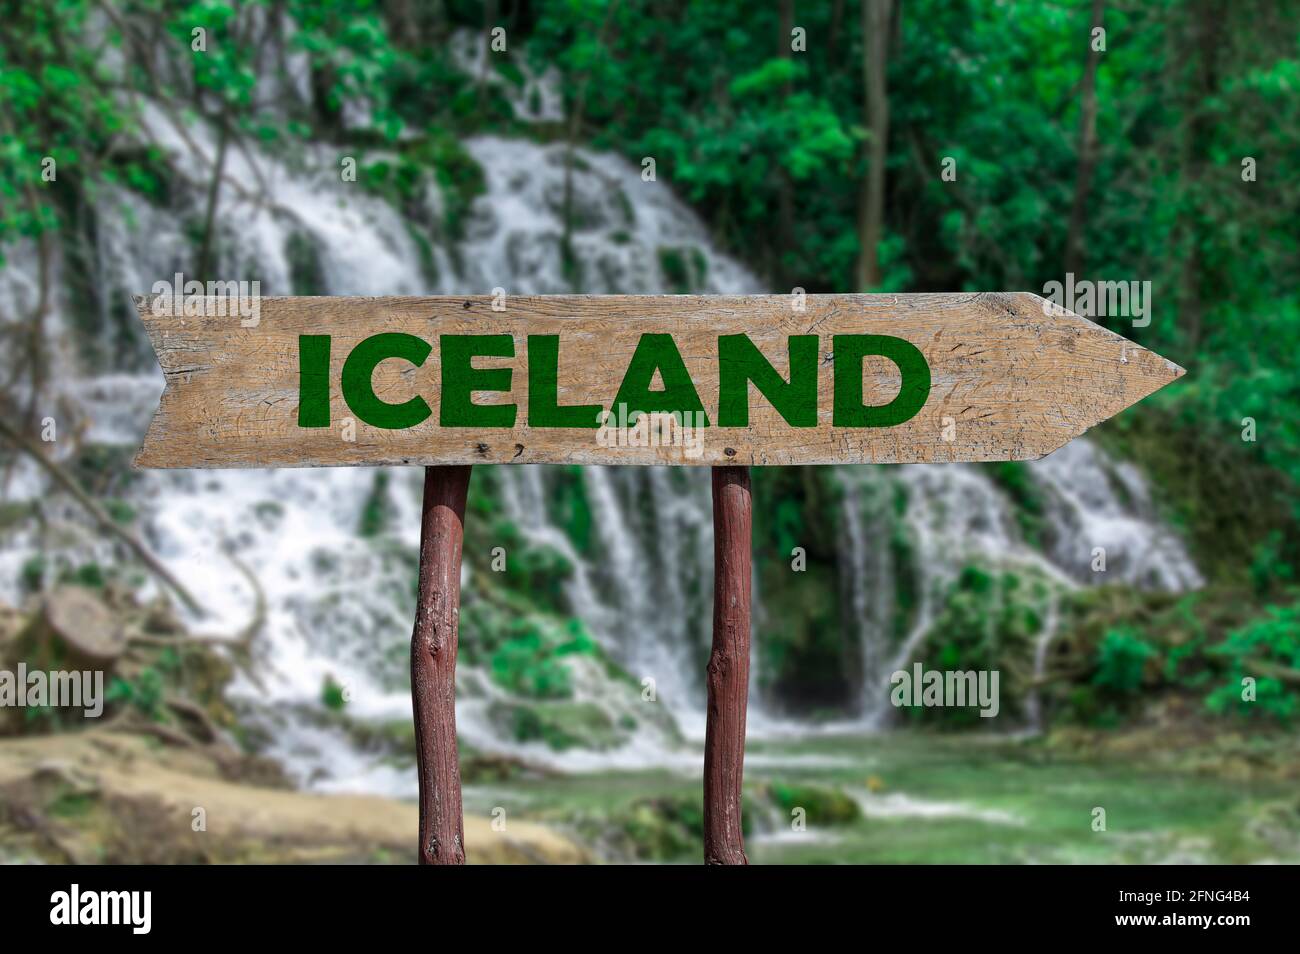 Island Holzpfeil Straßenschild gegen Wald Wasserfall Kaskade. Reise nach Island Konzept. Stockfoto